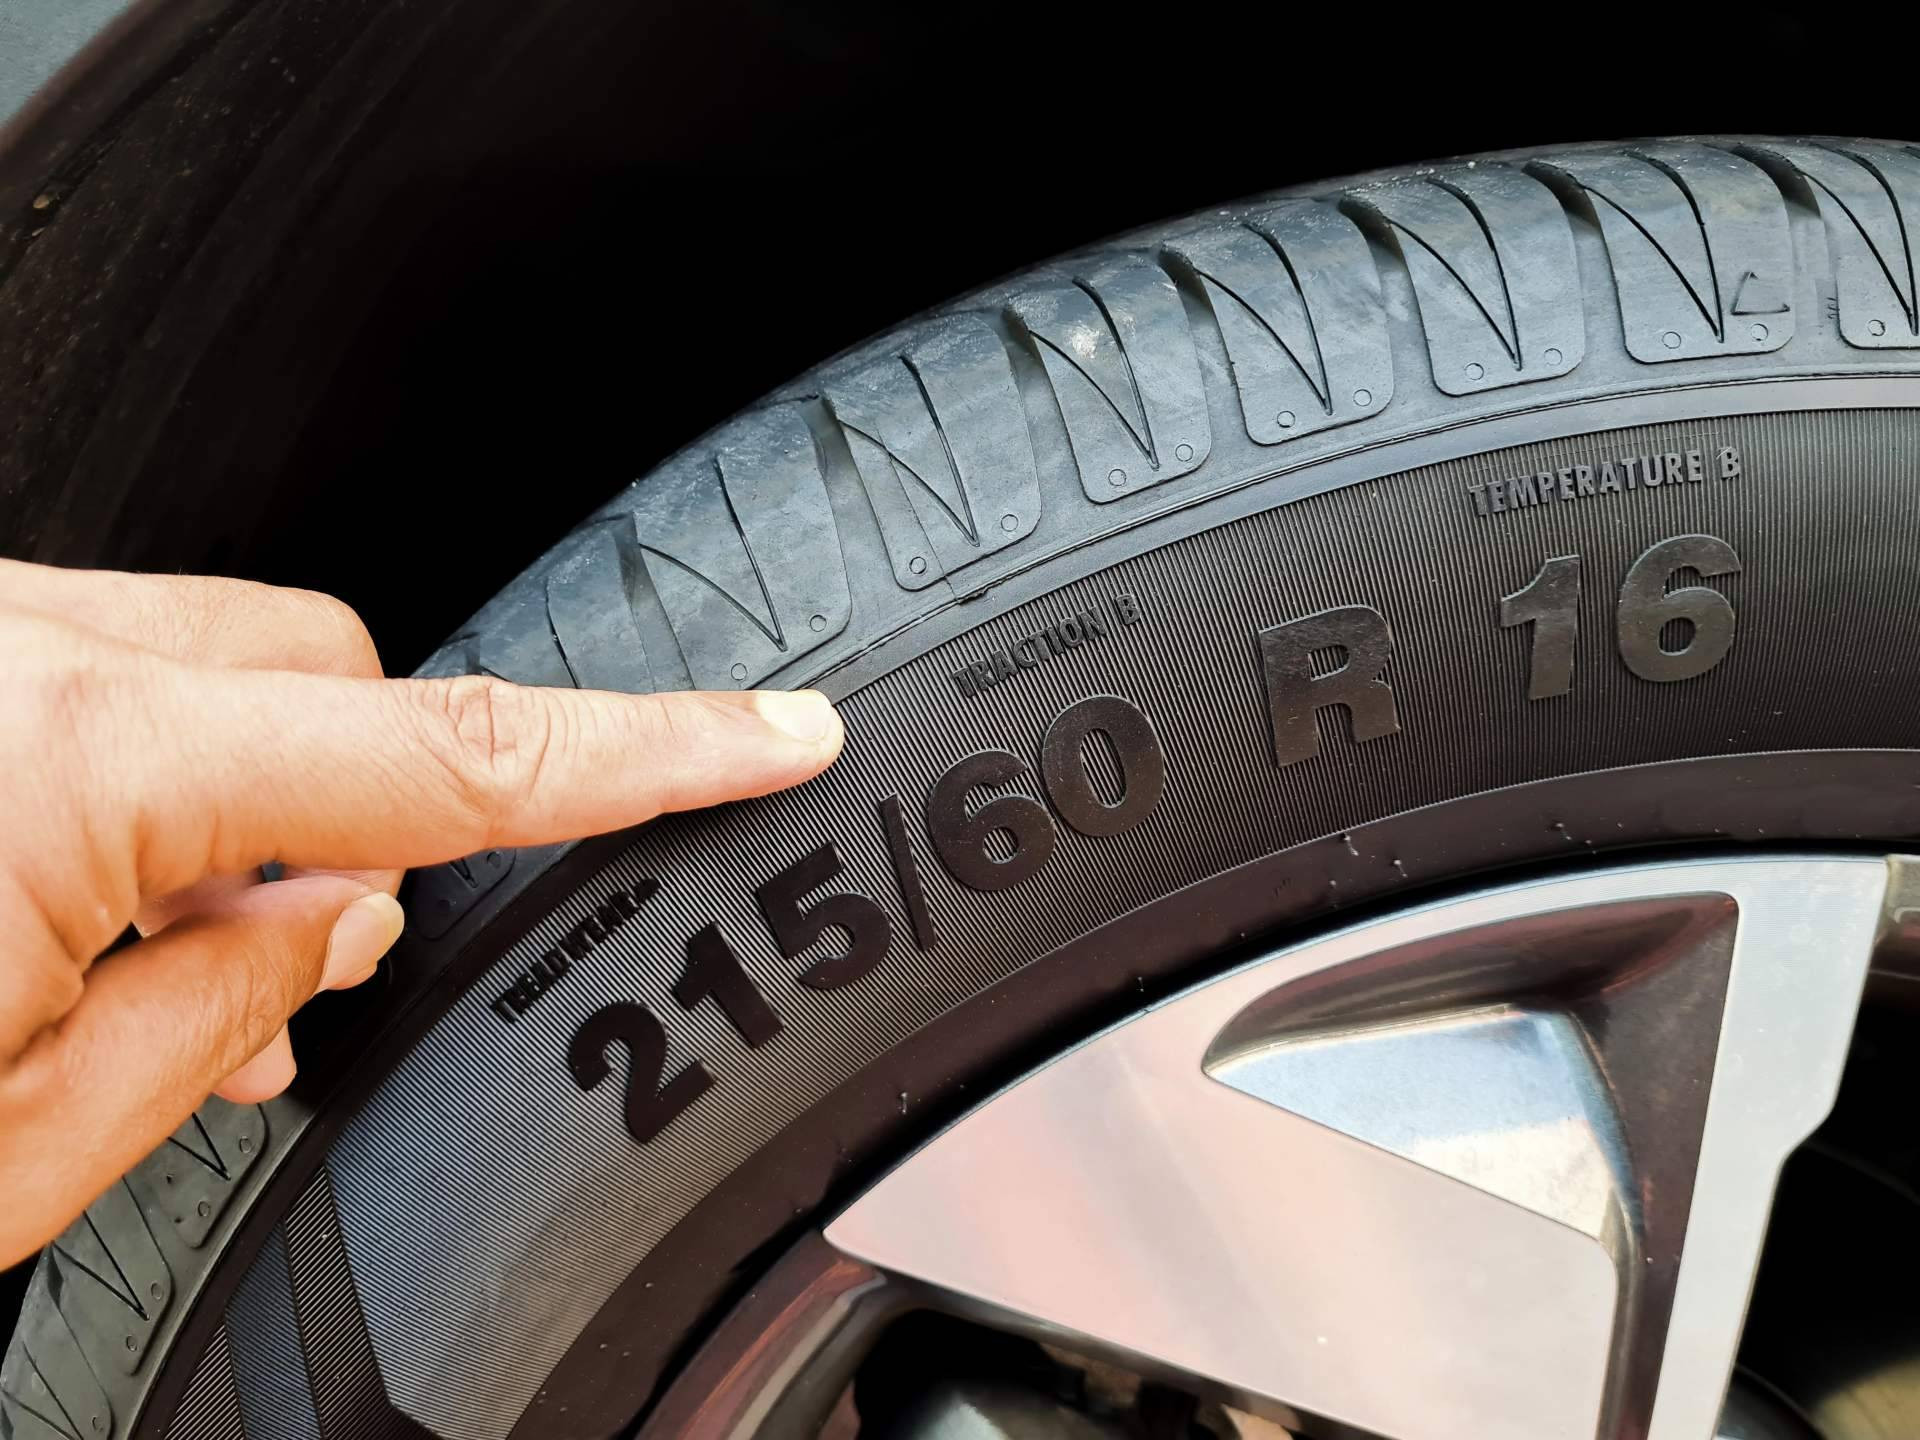  Venta de neumáticos baratos en Fuenlabrada de la mano de Neumáticos Porpoco 